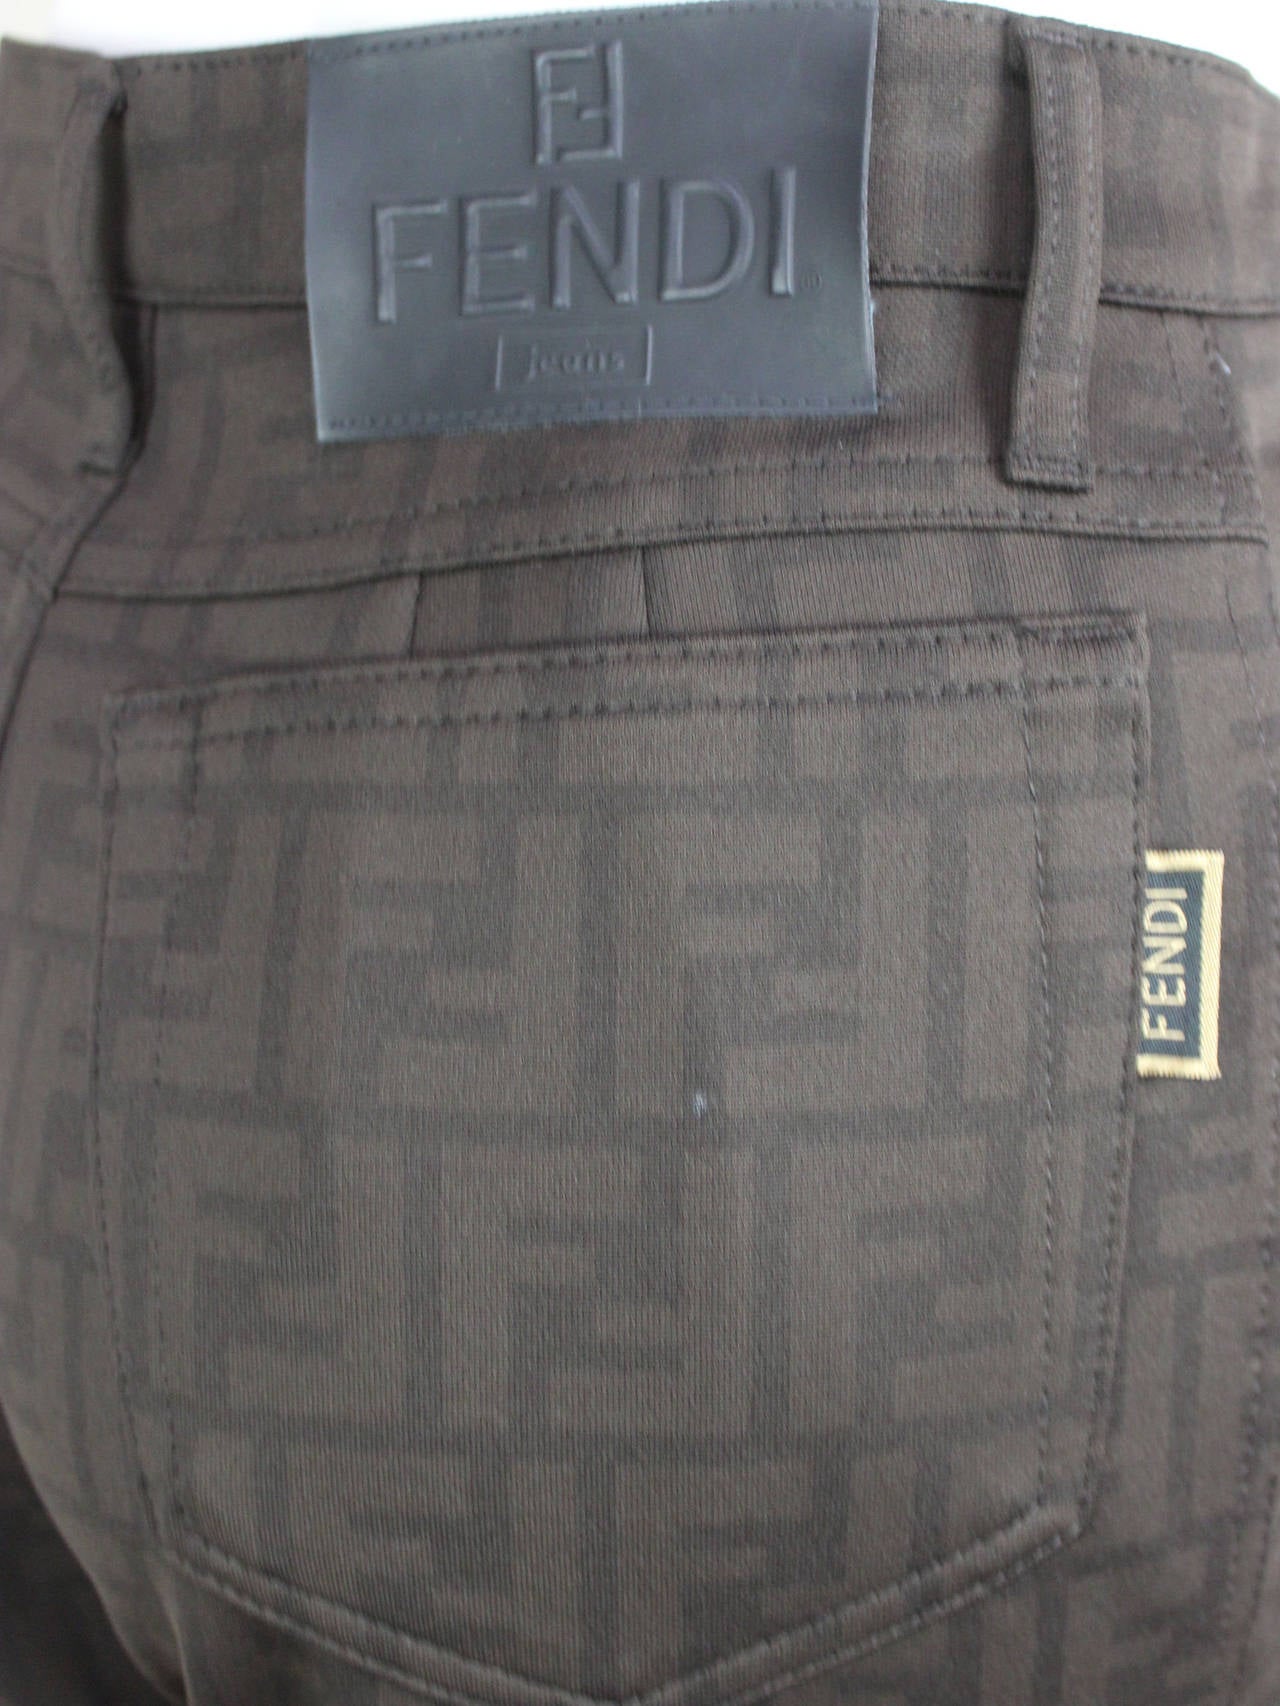 Black Vintage Fendi Brown Logo Patterned Pant Jeans